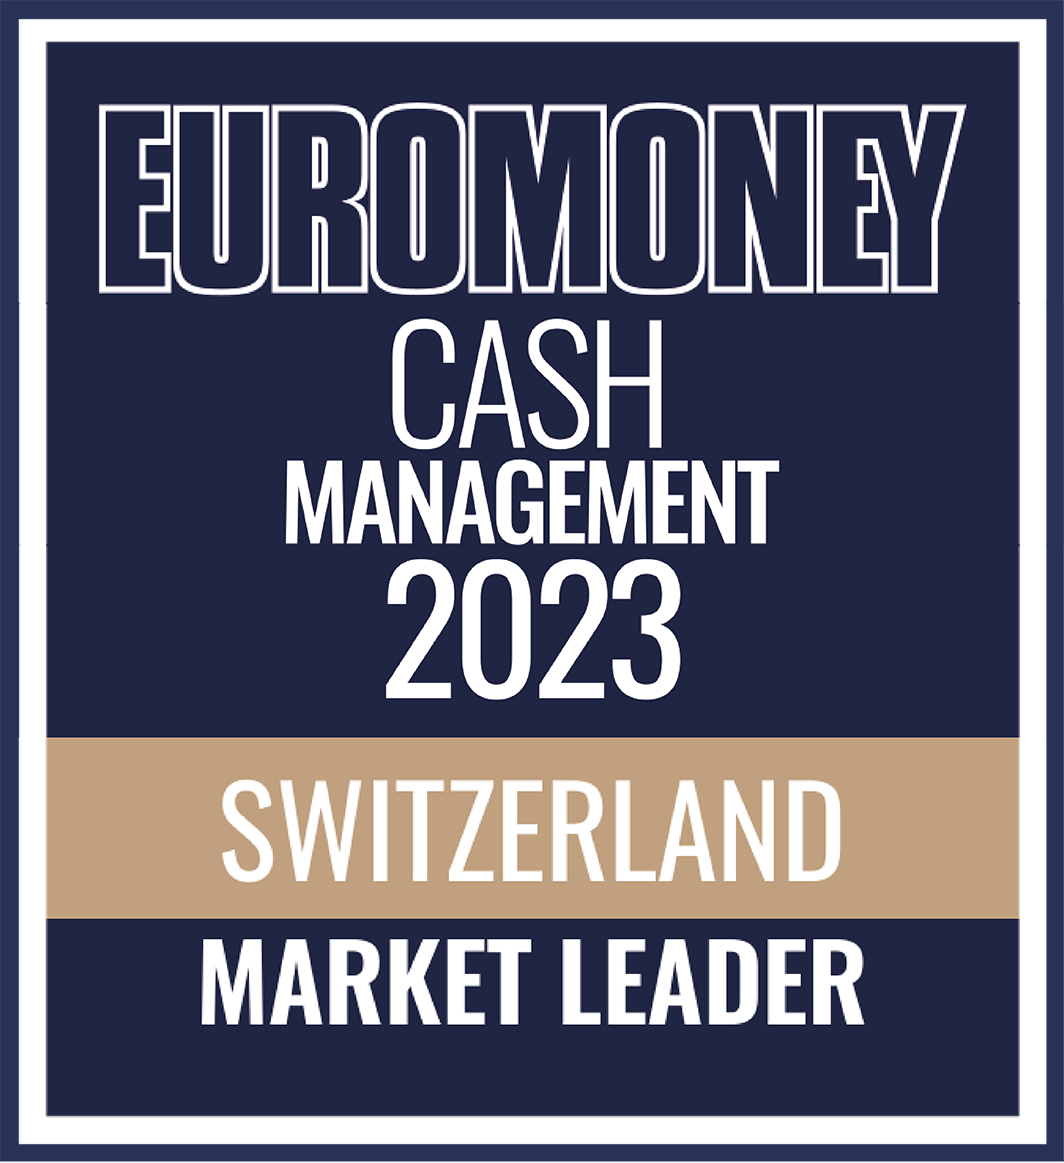 Euromoney Cash Management 2023 Schweiz Marktführer Award Logo